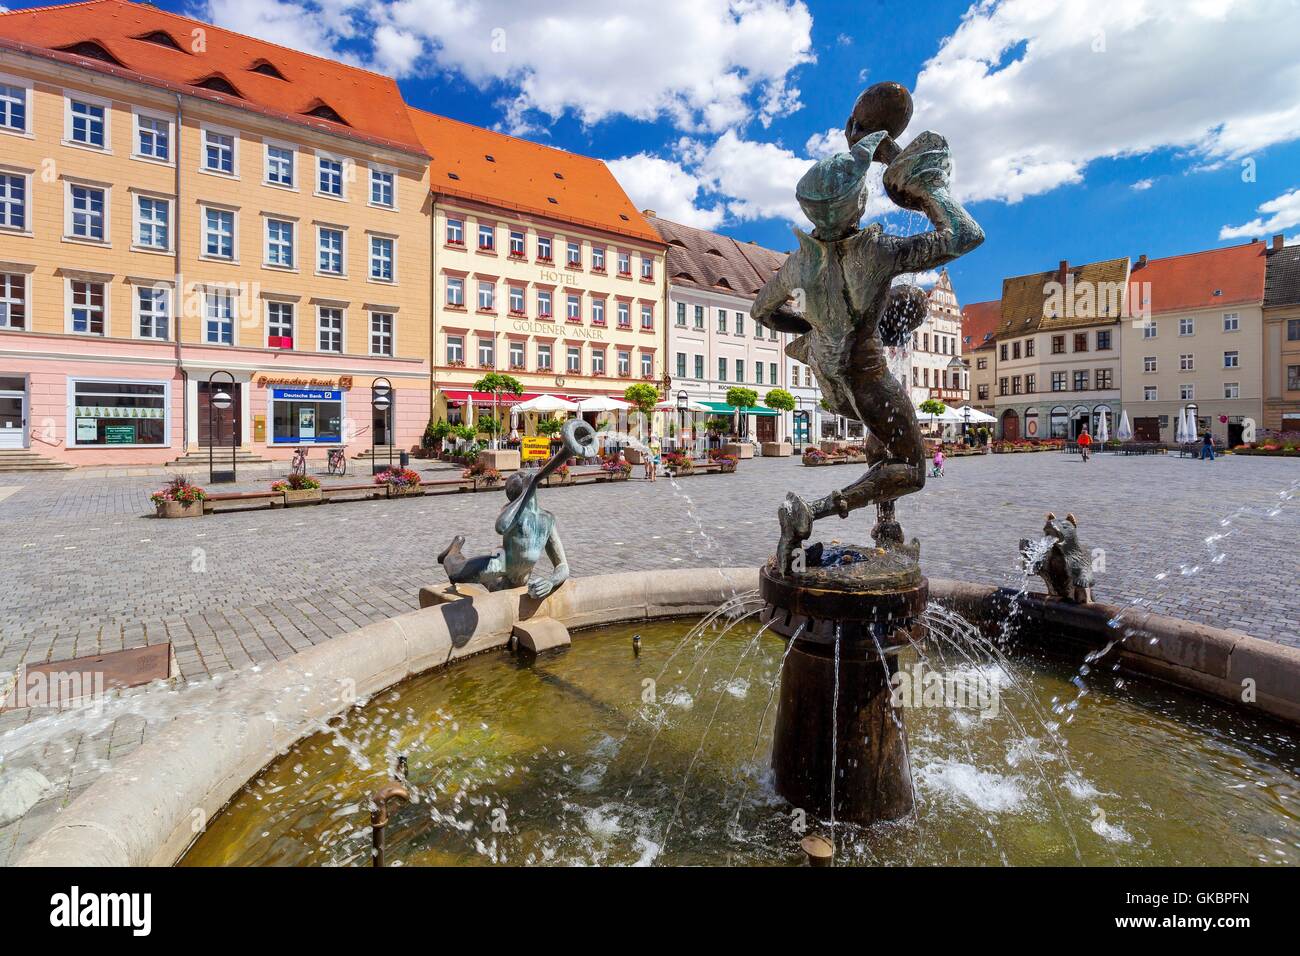 Marktplatz in der Stadt Torgau (Sachsen), 20. Juli 2016 | weltweite Nutzung Stockfoto